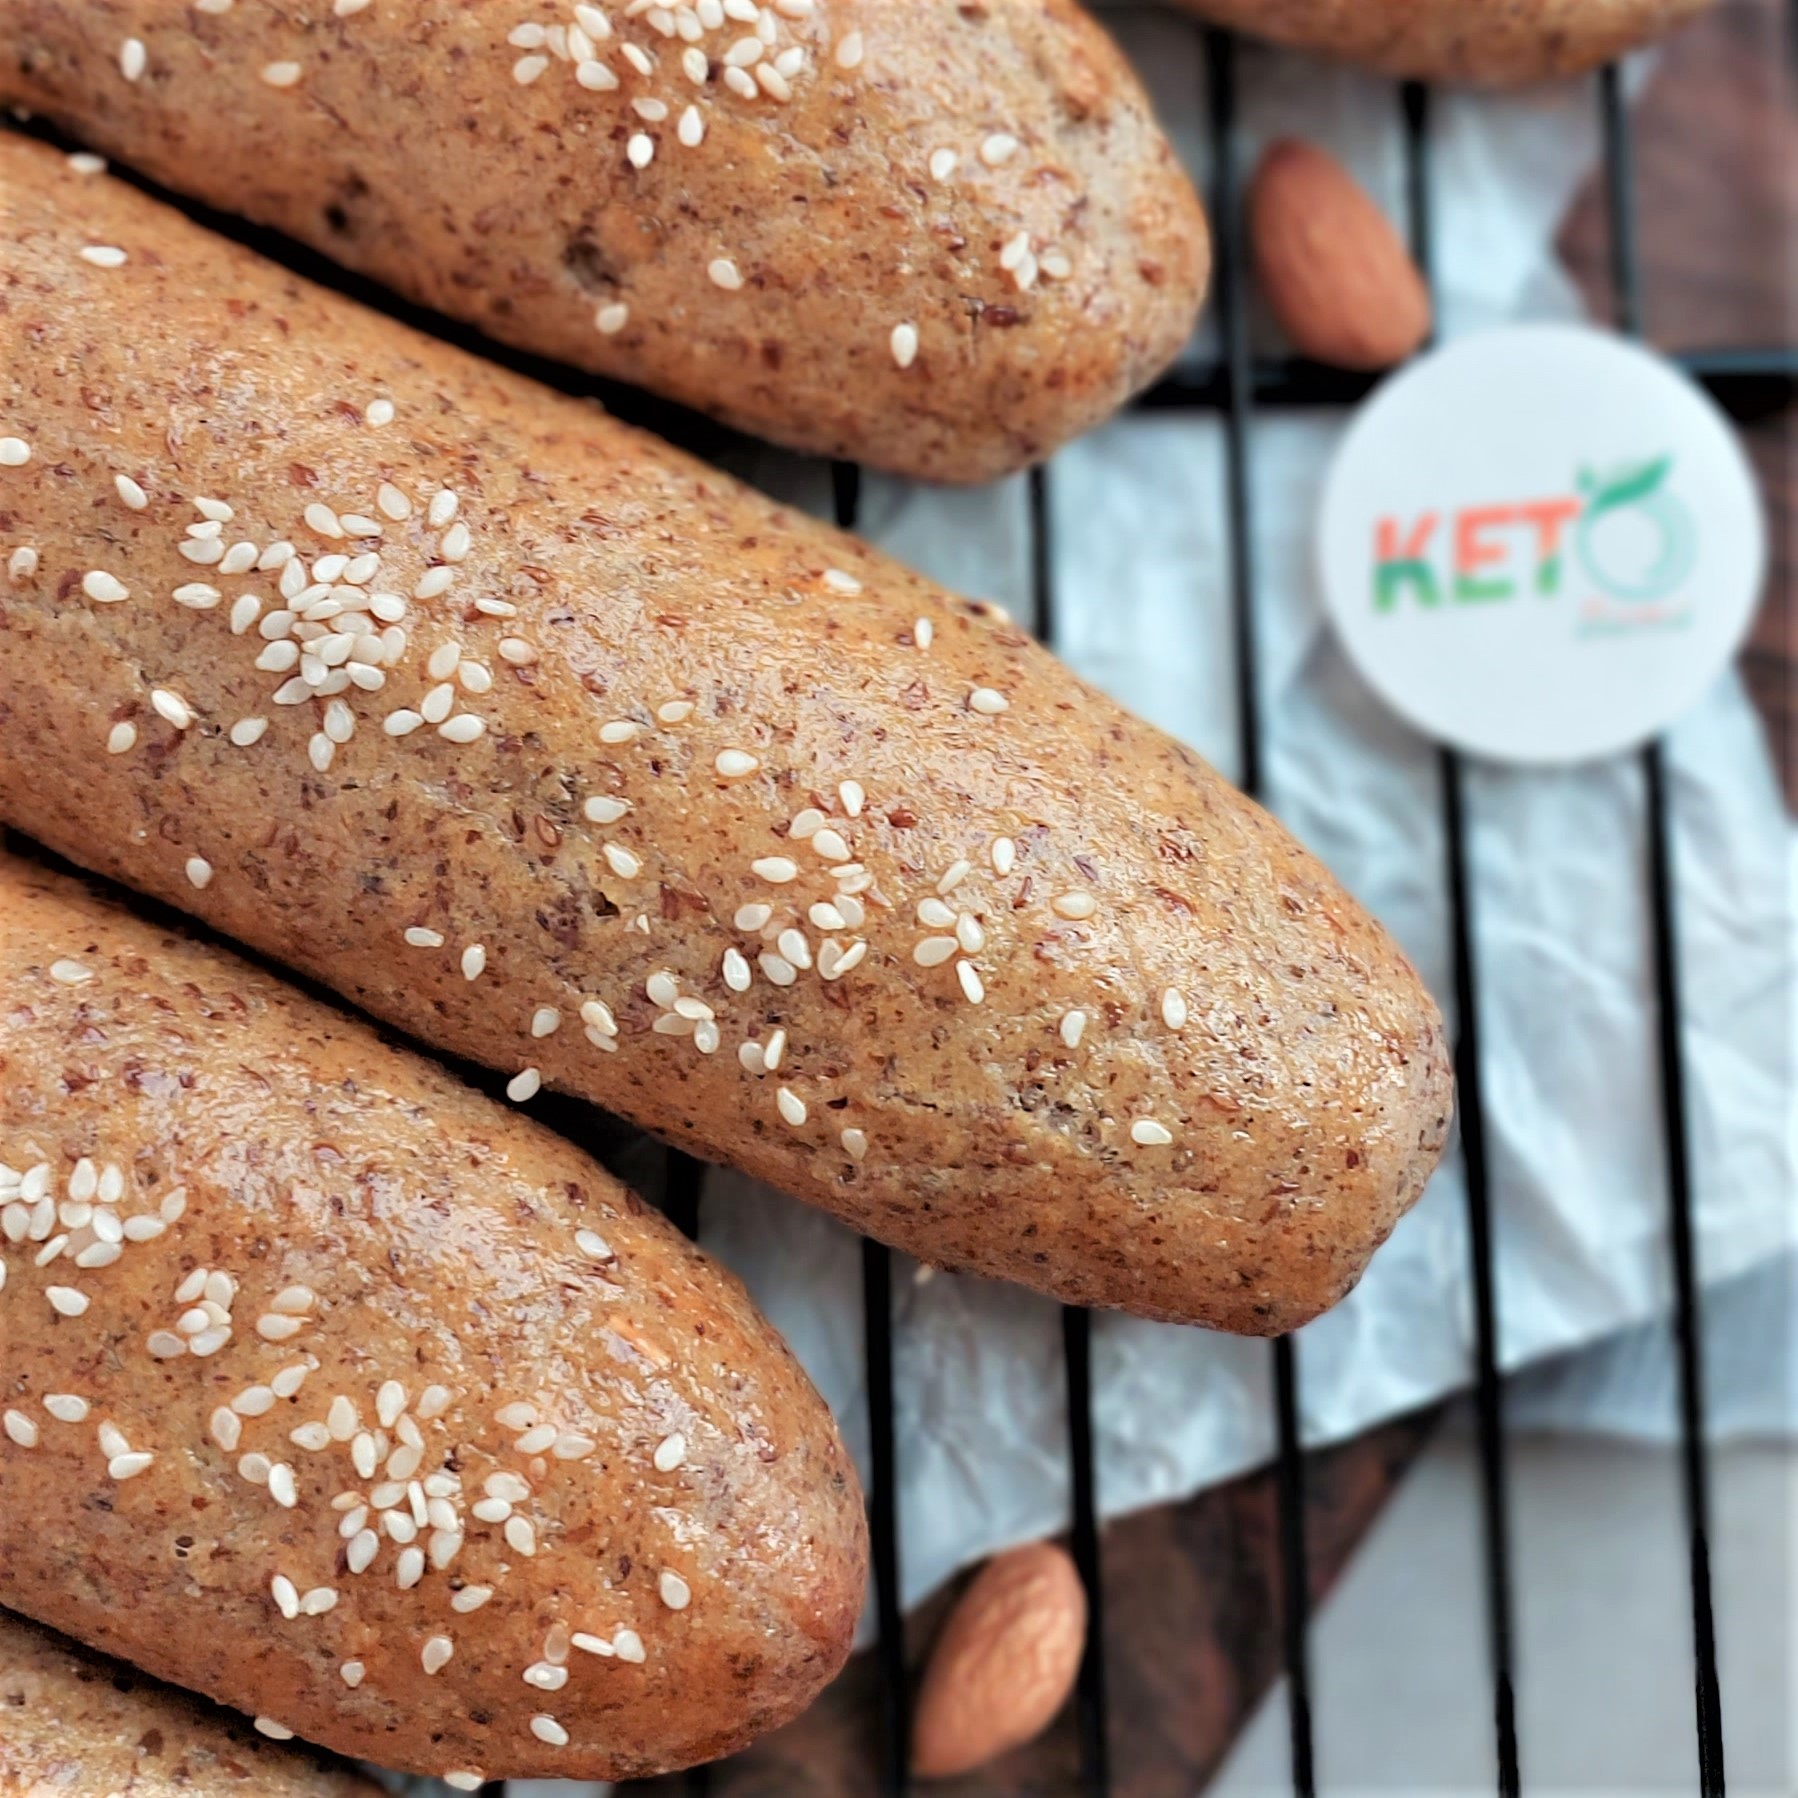 نان باگت 90 گرمی رژیمی با آرد بادام (کتوژنیک)- بسته های 3 و 6 عددی- پخت روز